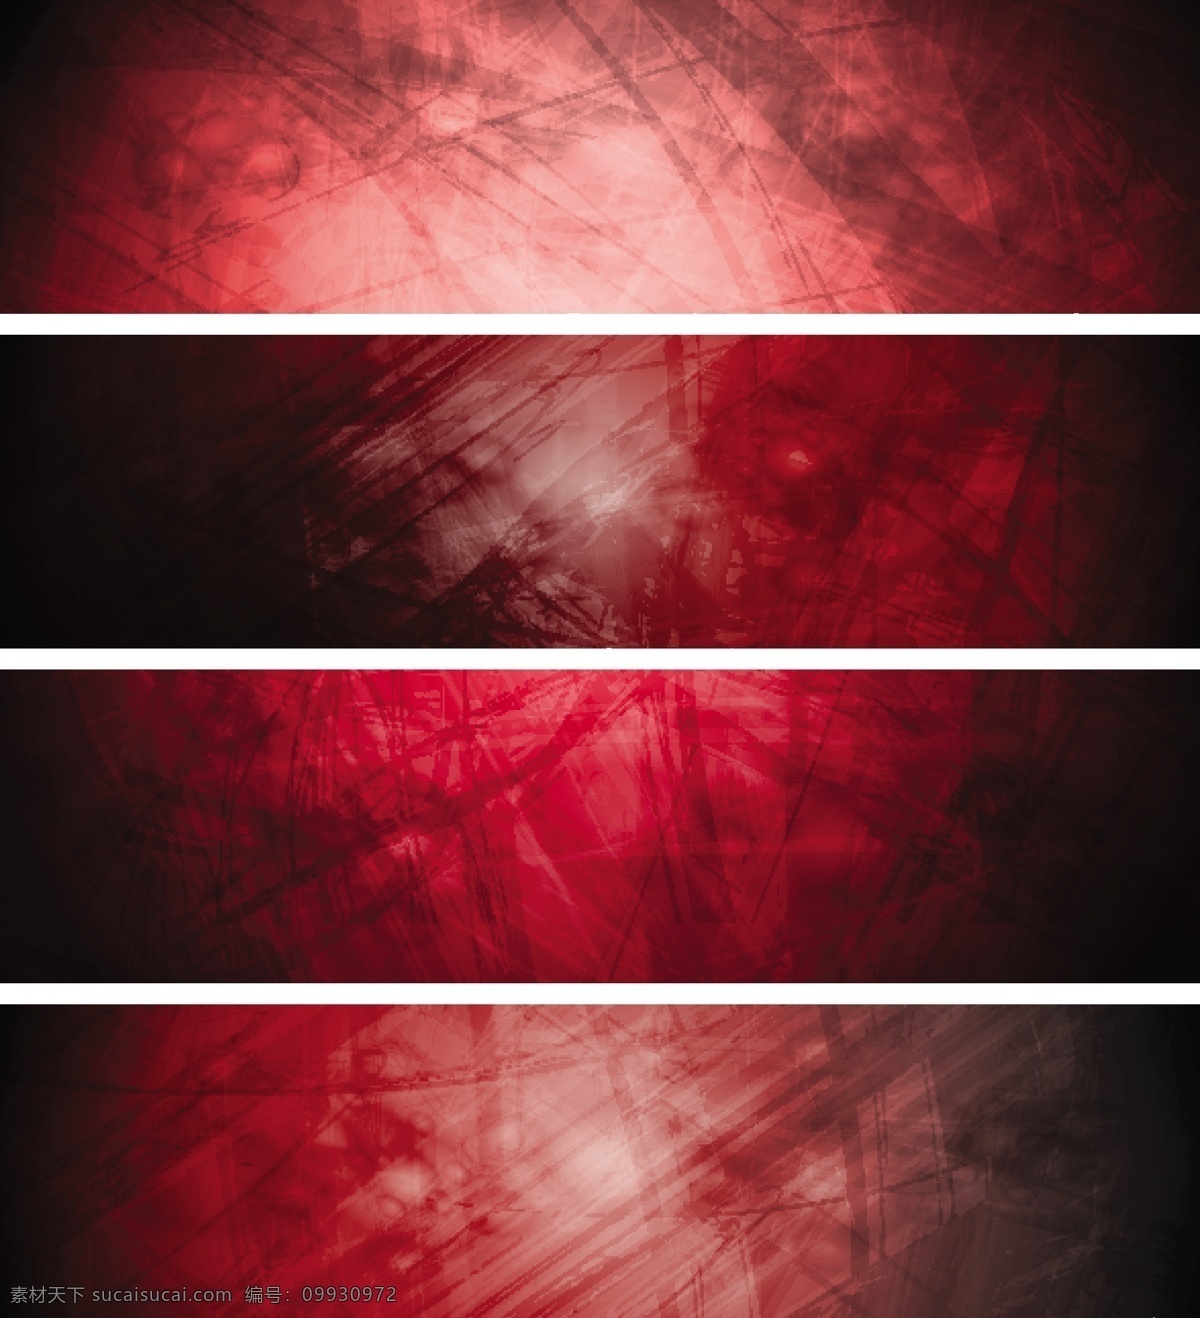 红色 磨砂 质感 背景 卡片背景 矢量素材 红色磨砂背景 磨砂质感 摩擦痕迹 矢量图 其他矢量图